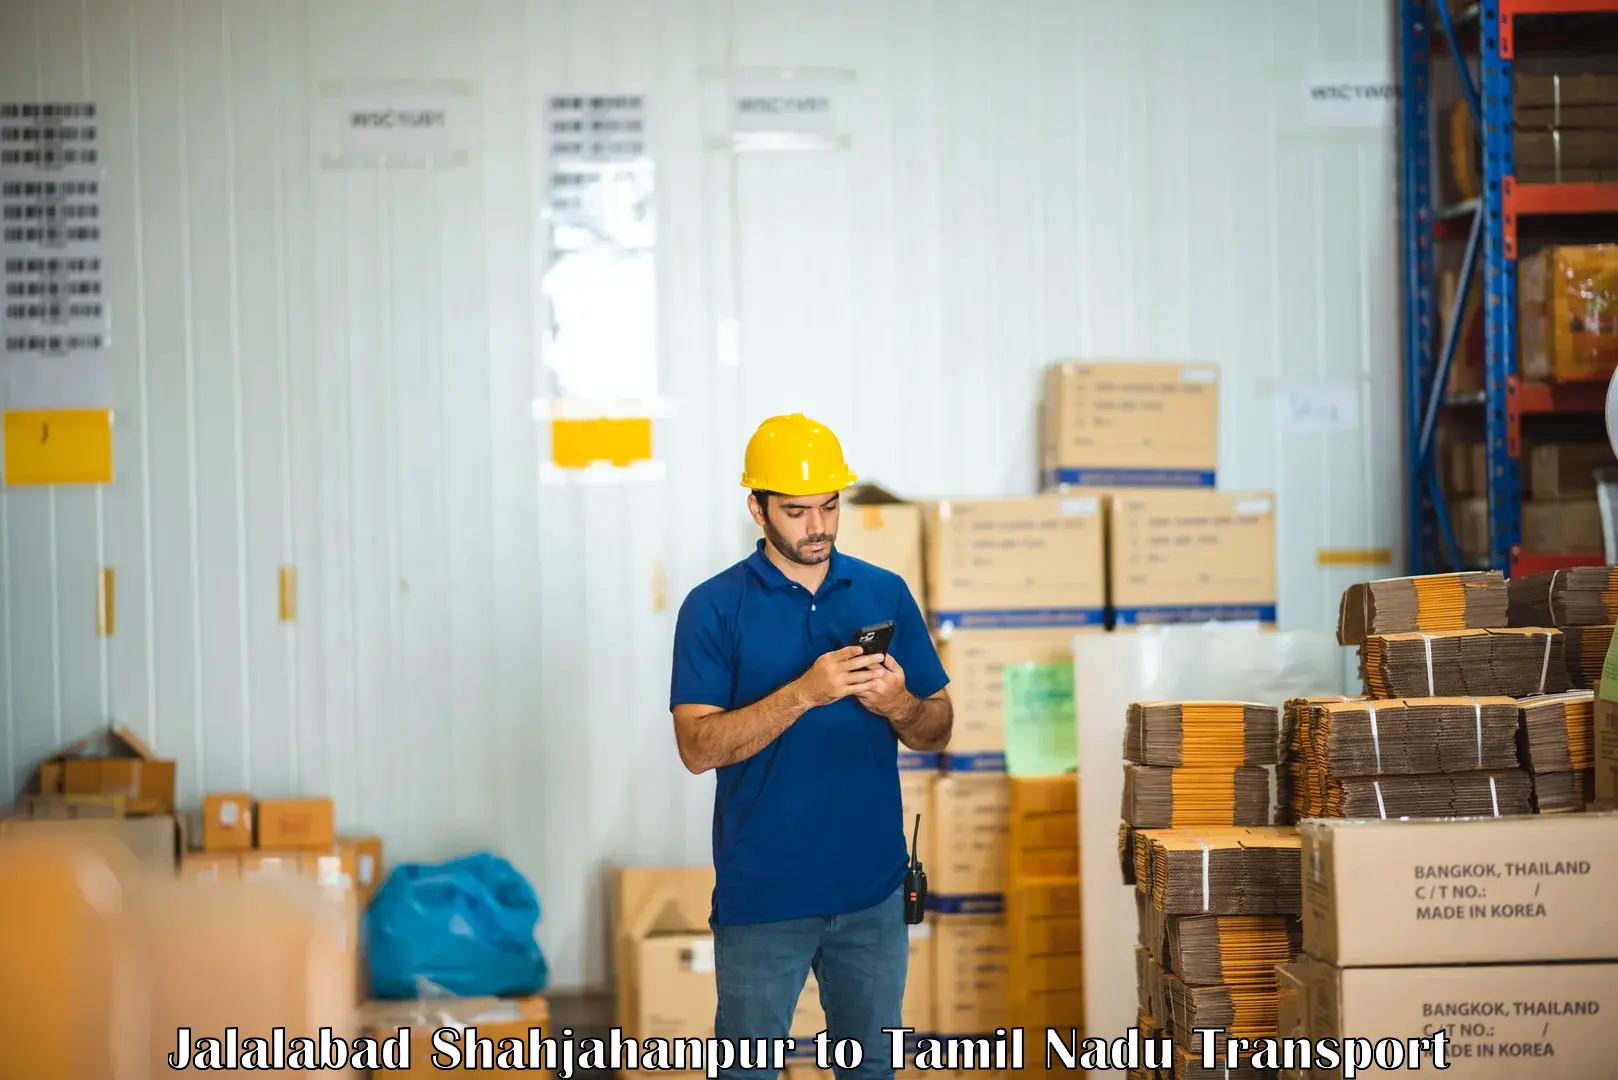 Shipping services Jalalabad Shahjahanpur to Kagithapuram